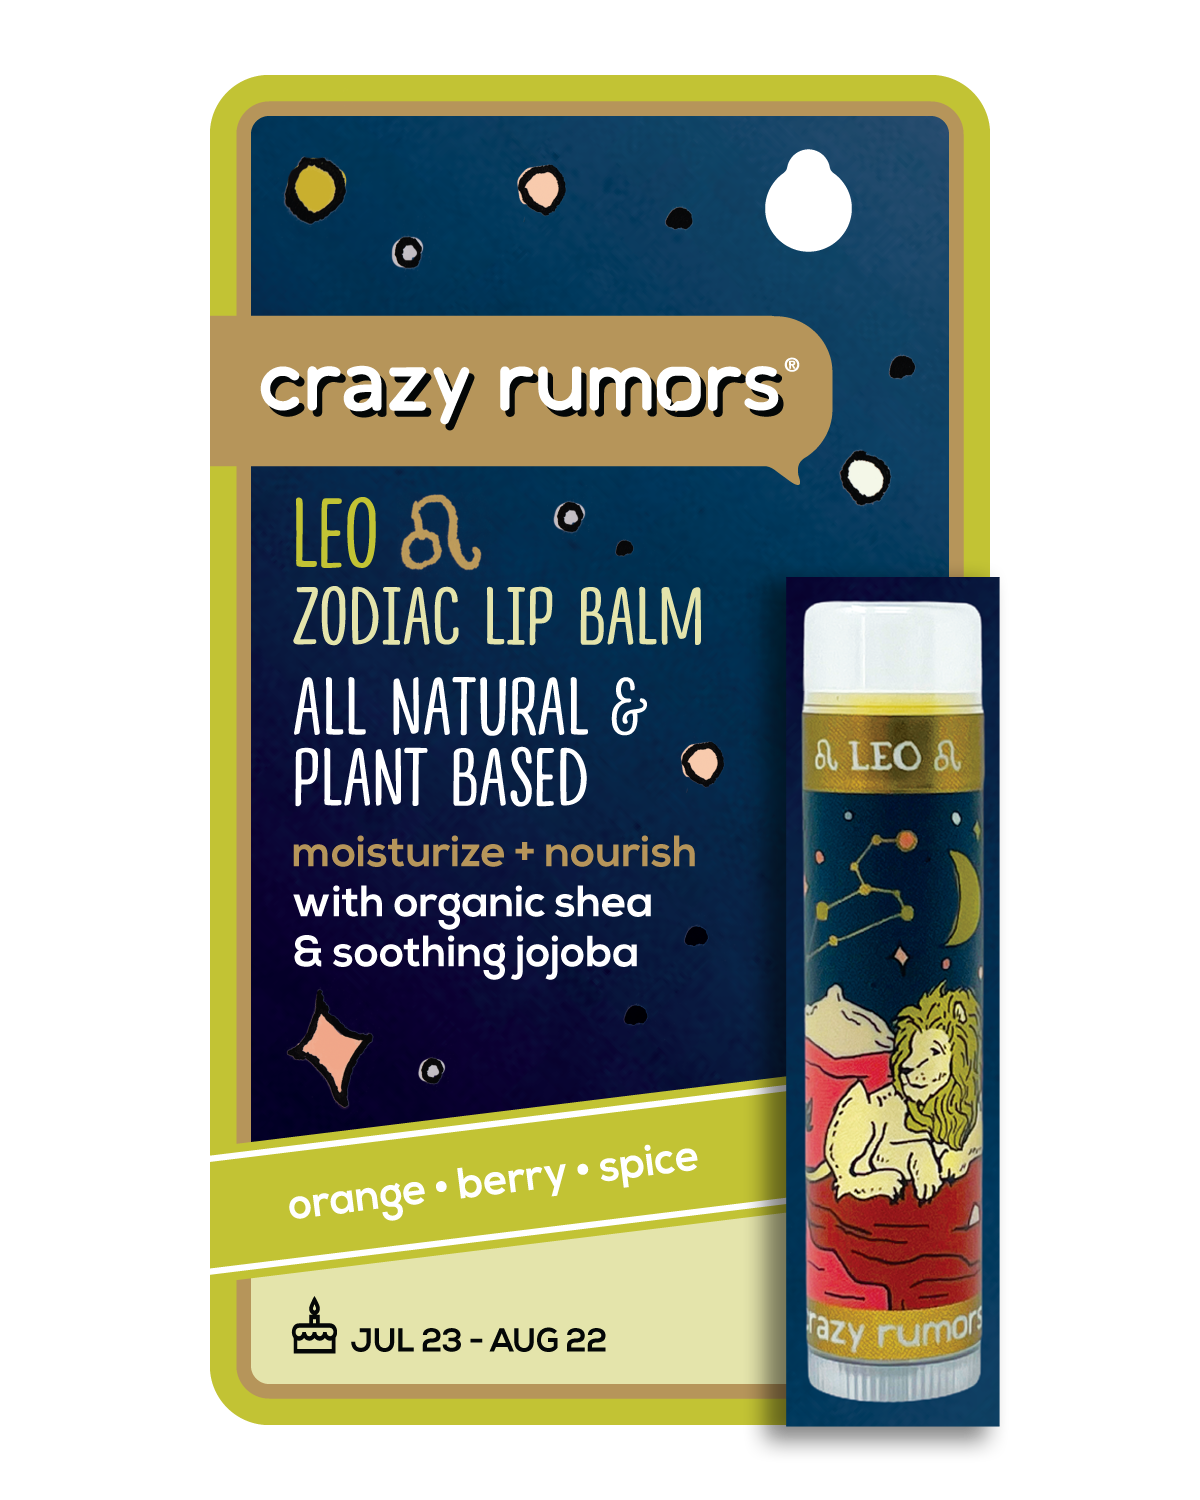 Crazy Rumors - Leo, Zodiac Lip Balm